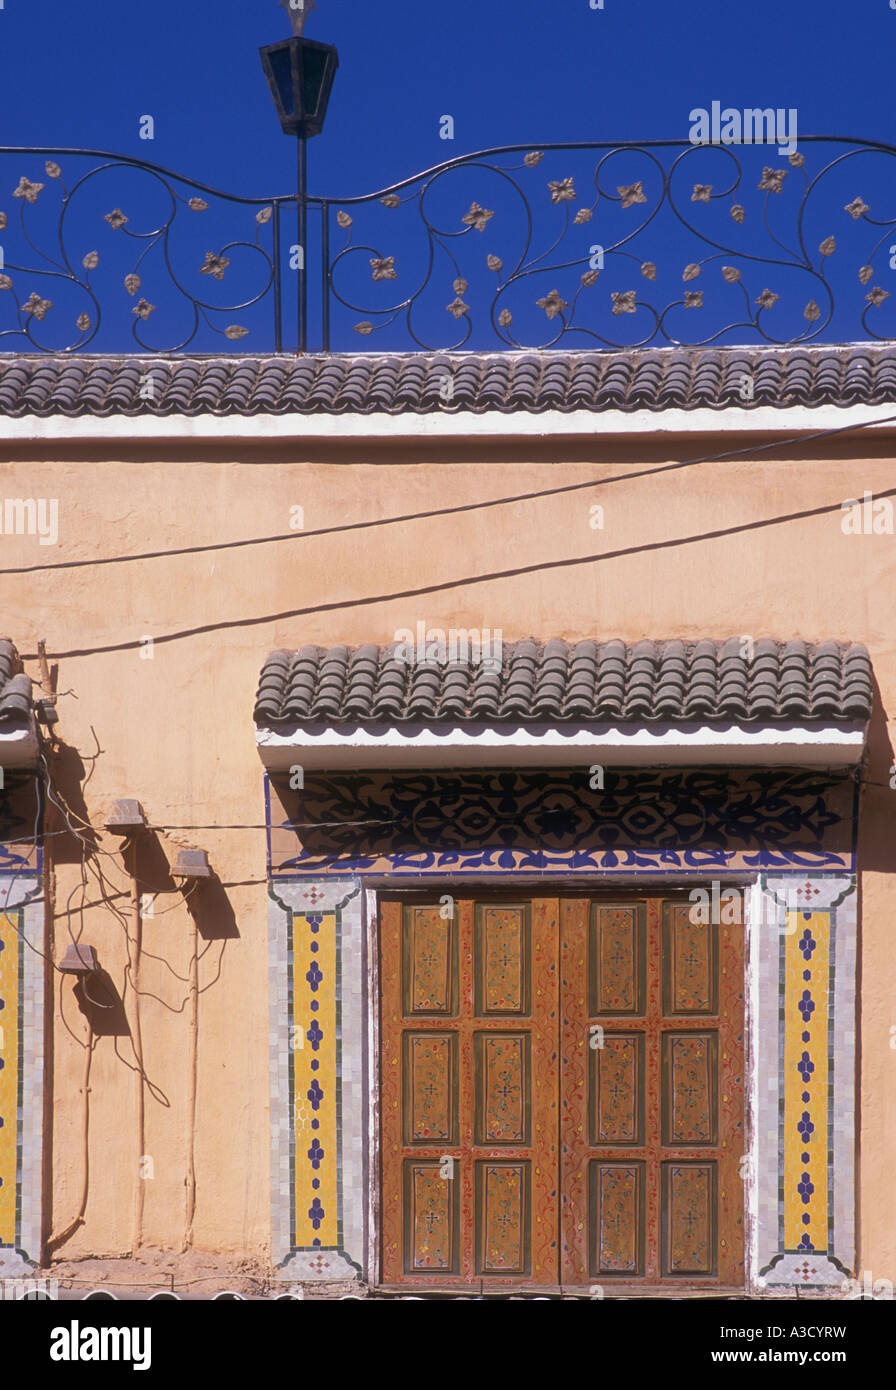 Puertas pintadas tradicionales baldosas geométricas y hierro forjado en Marrakech Marruecos Foto de stock